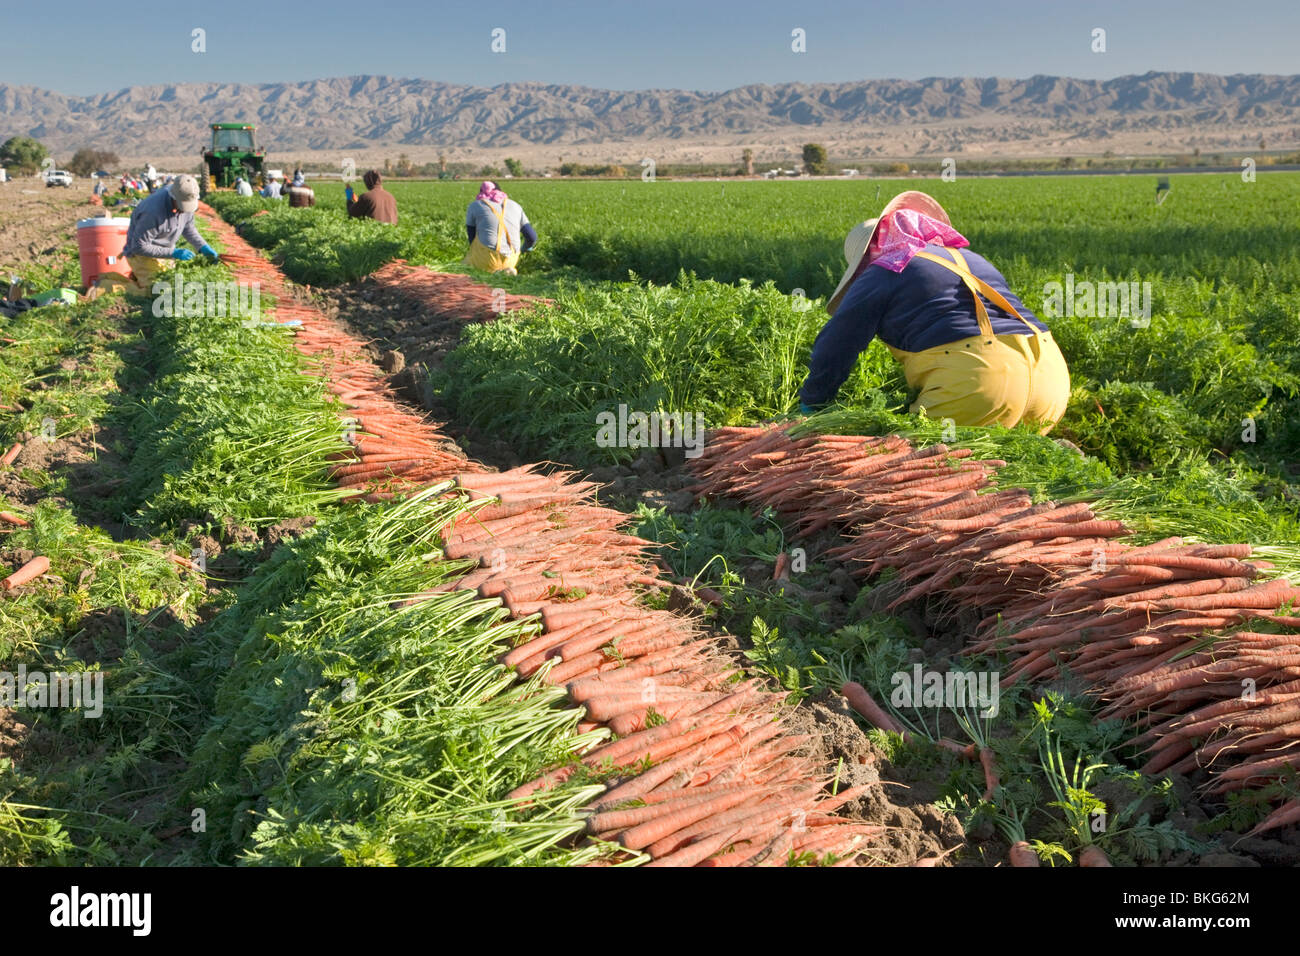 La cosecha de zanahoria 'Caucus carota', los trabajadores agrícolas hispanos cosechan la cosecha. Foto de stock